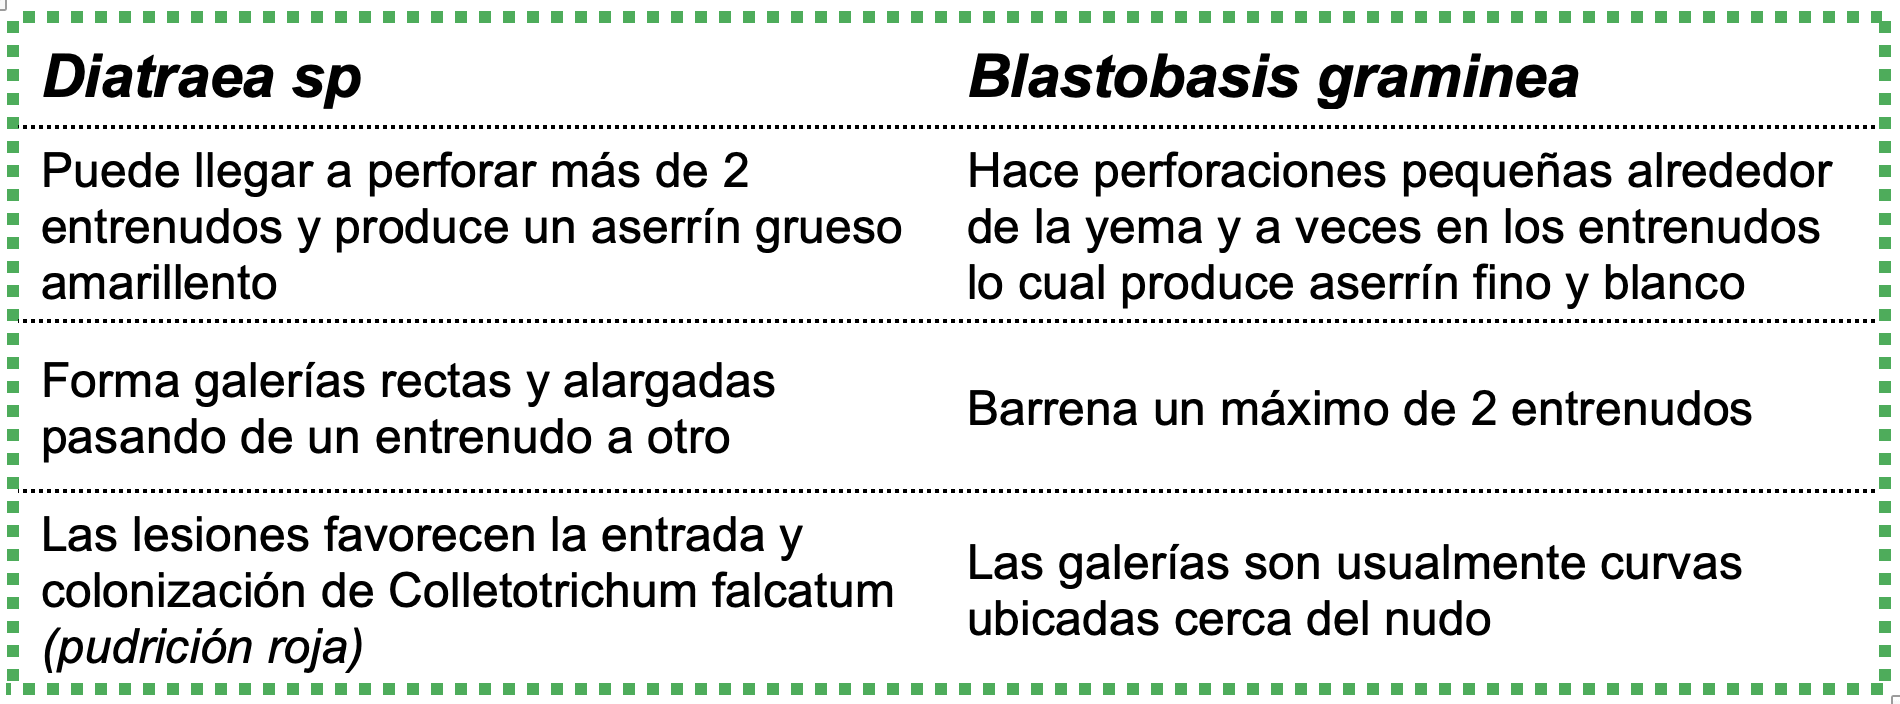 Barrenador Tallo: diferencia Diatraea sp. vs. Blastobasis graminea